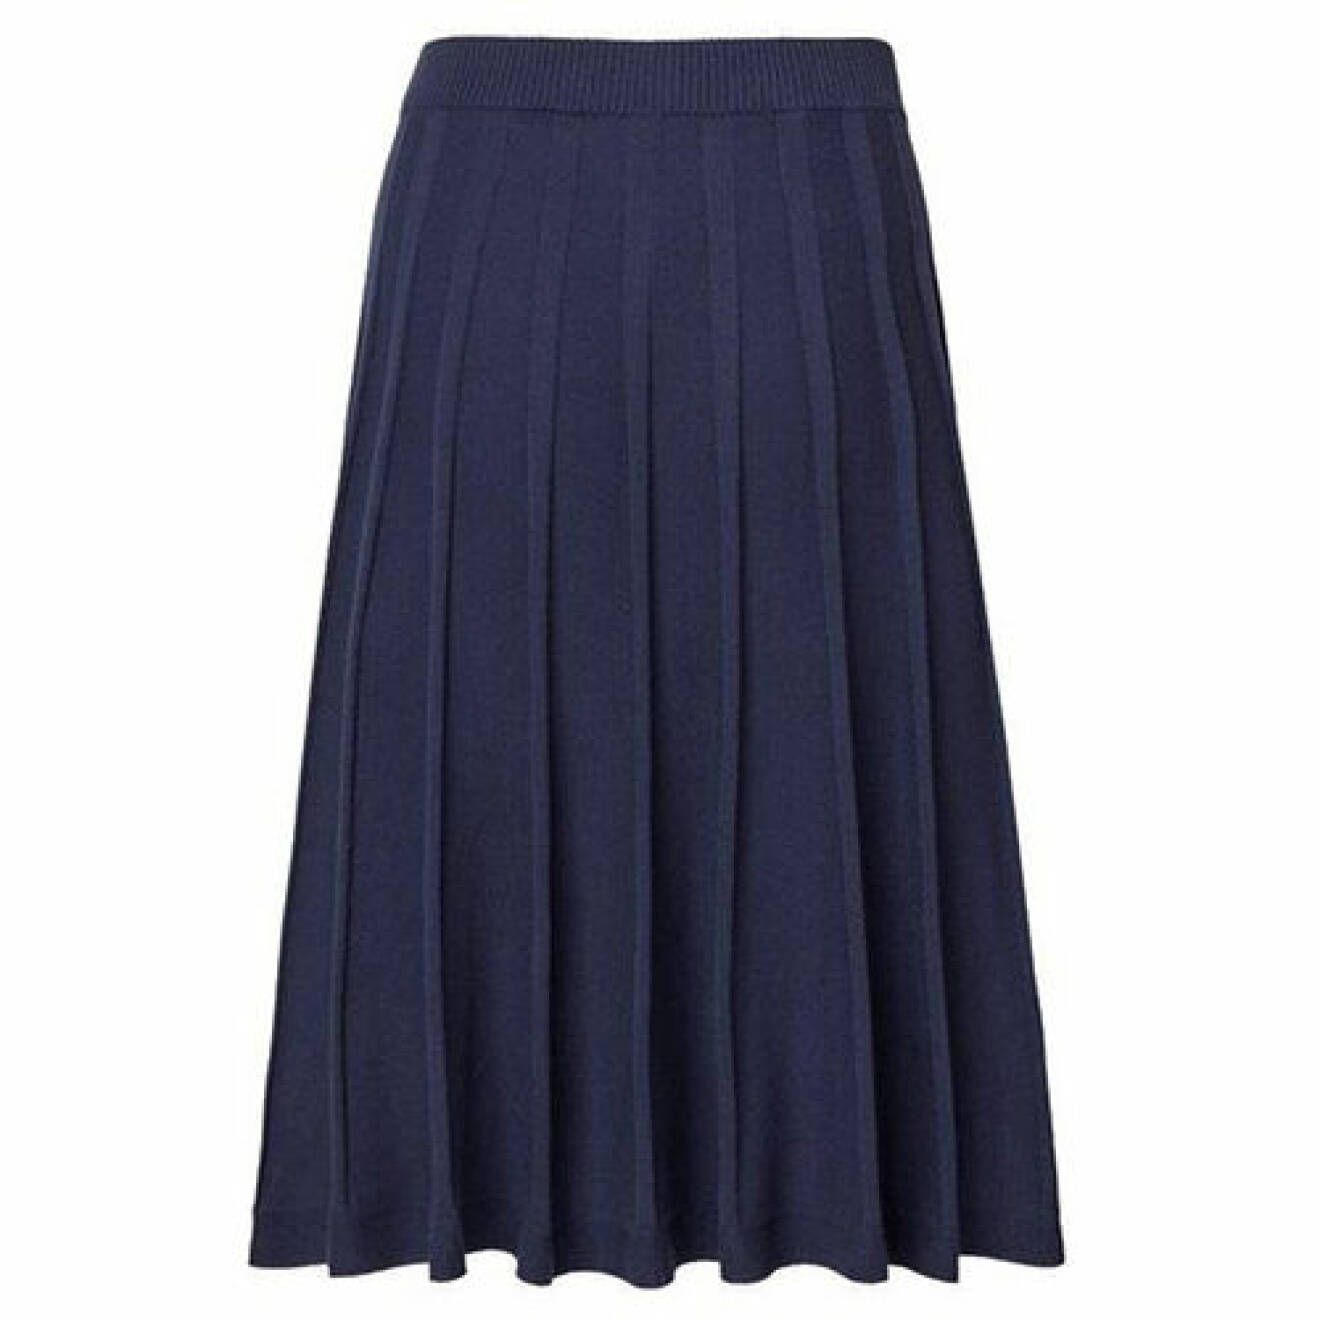 basgarderob dam 2022 – marinblå plisserad kjol från Jumperfabriken